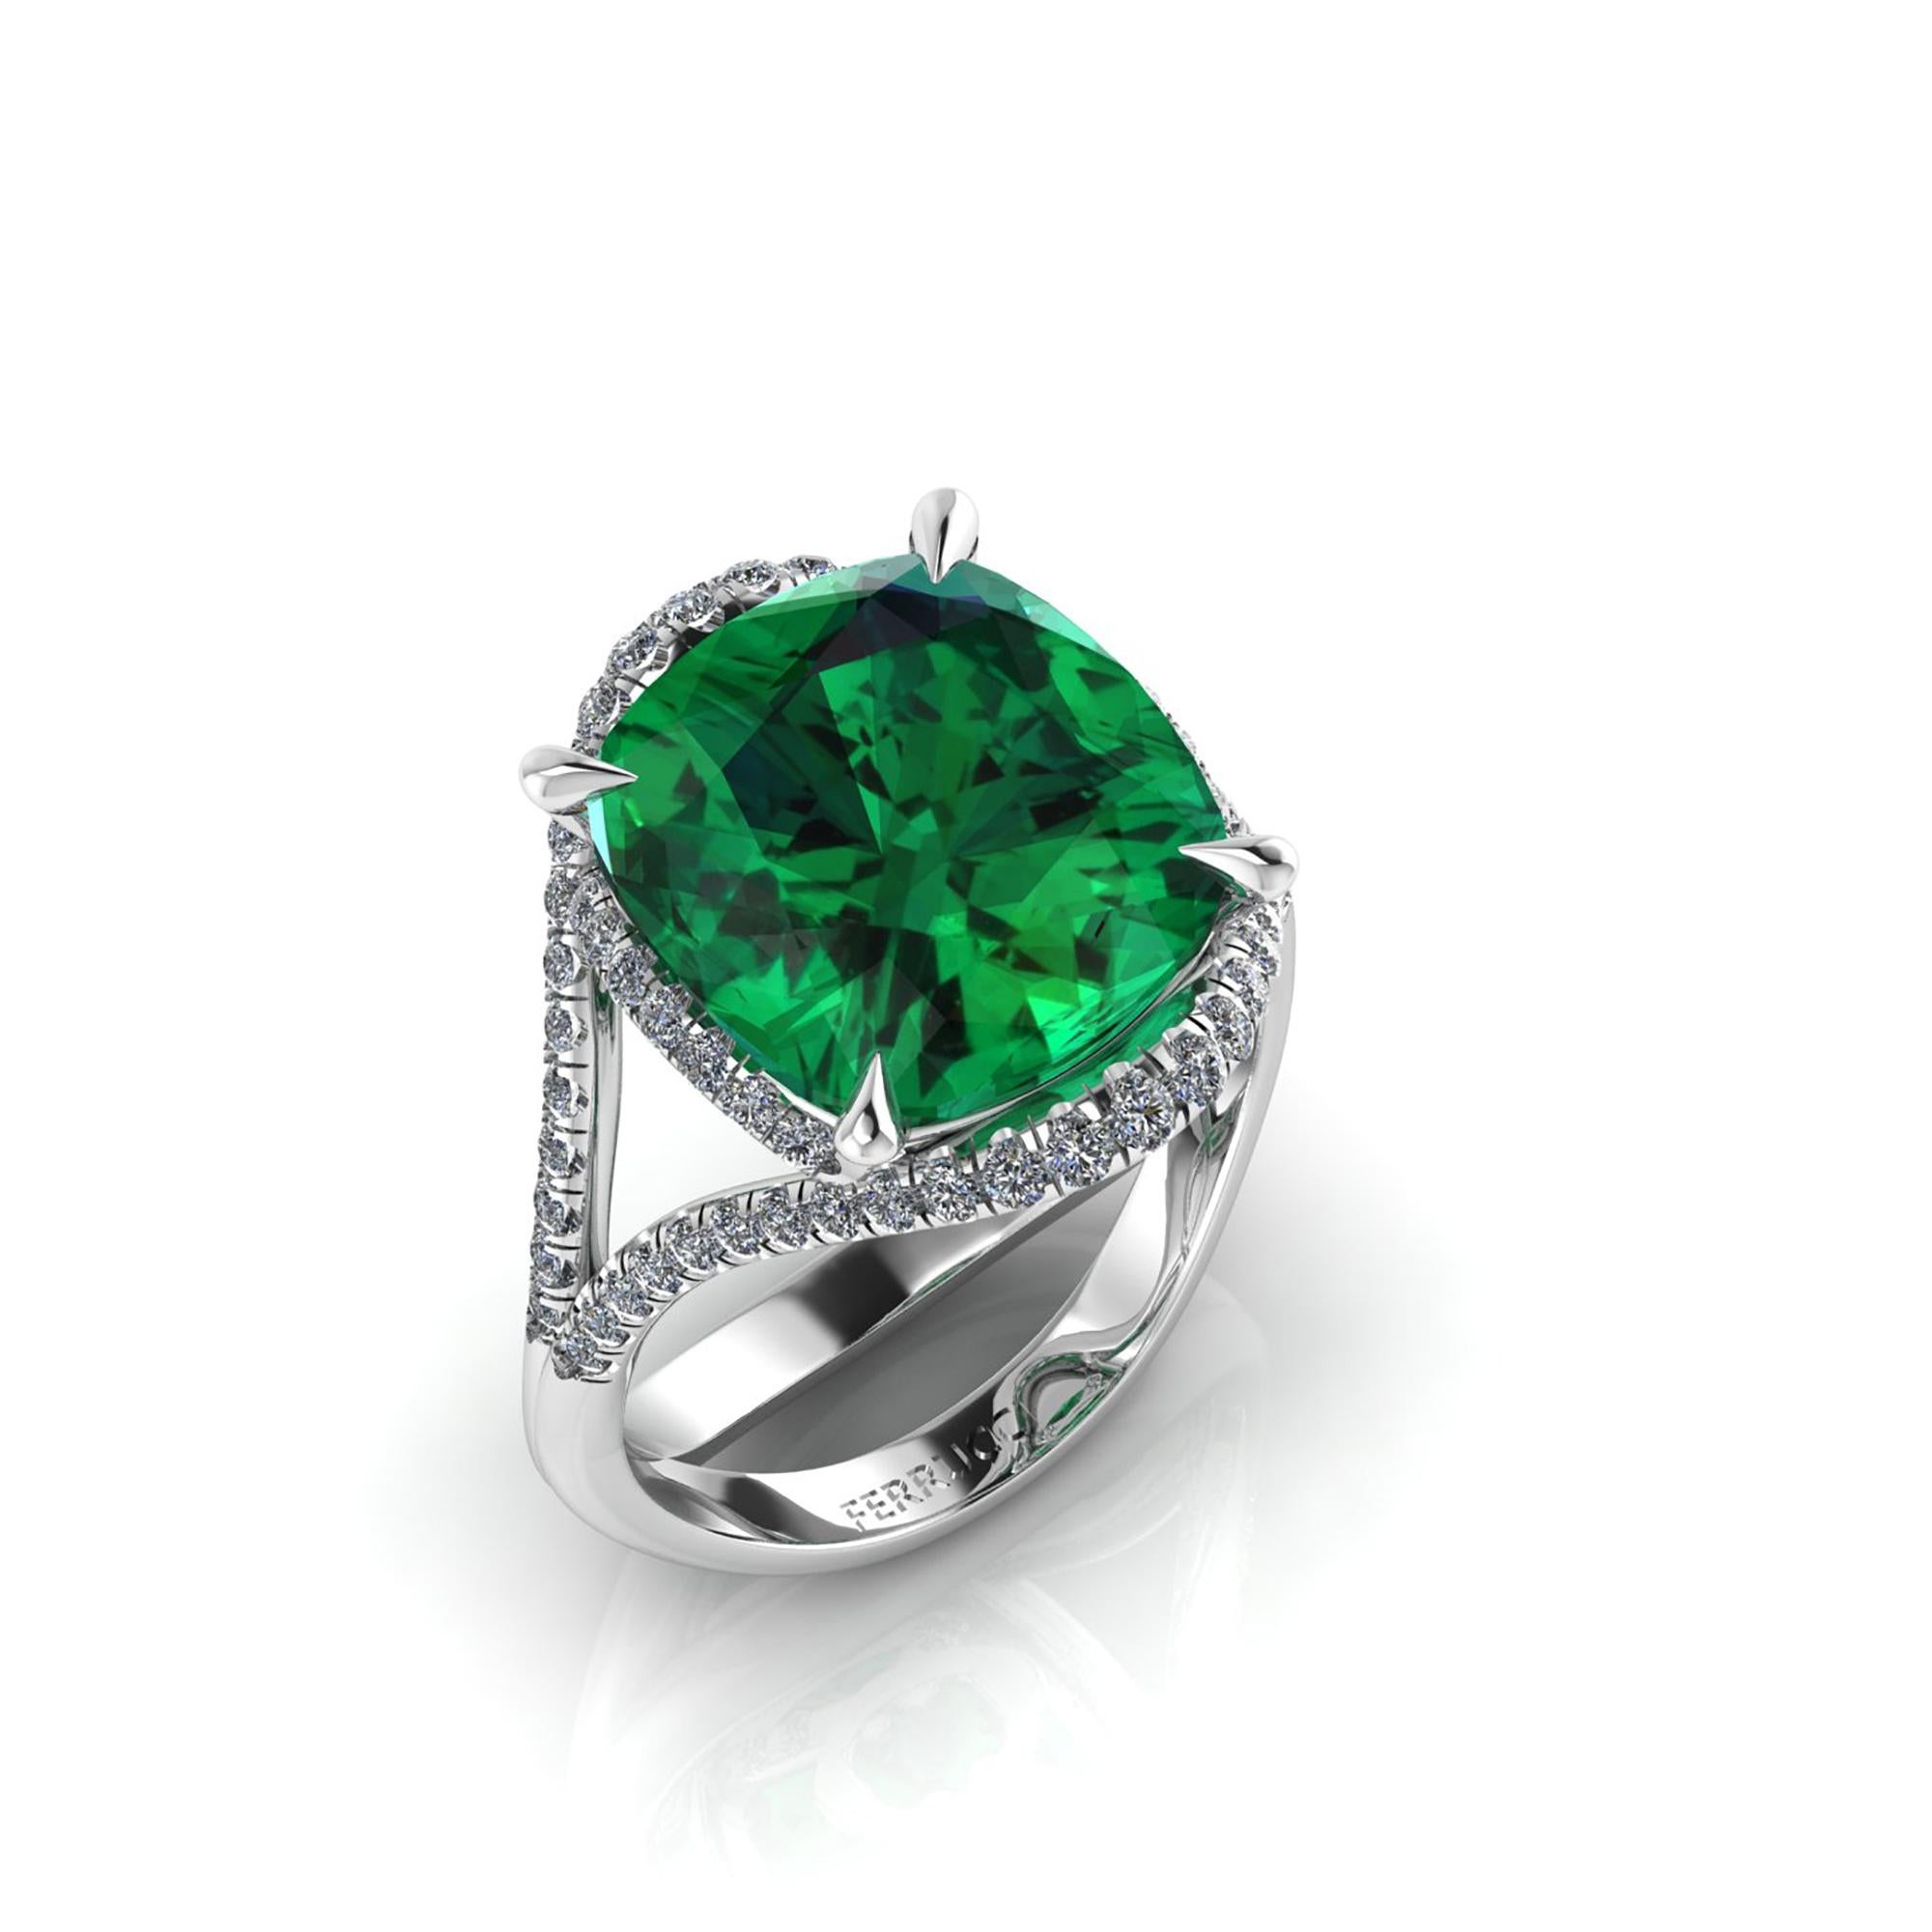  5 tiefgrüne, natürliche Turmaline in einem einzigartigen, handgefertigten Platin 950, verziert mit 0,60 Karat weißen Diamanten, entworfen und konzipiert in New York City. 
Dieser Ring wird auf Bestellung gefertigt, um den absolut makellosen Zustand